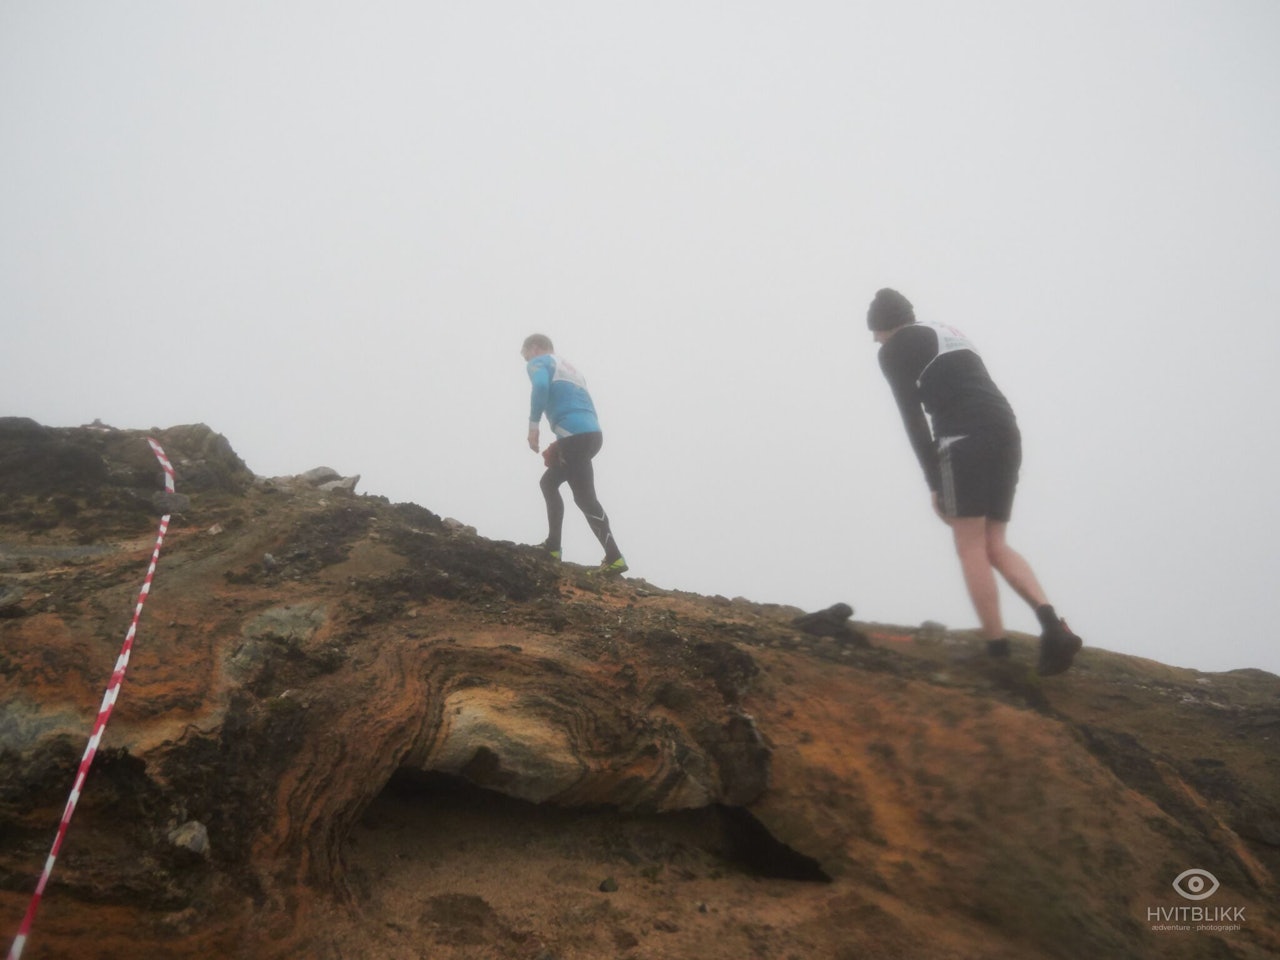 TÅKEHAV: Det var ikke helt det synet løperne hadde ønsket seg som ventet på toppen av fjellet. Foto: Timme Ellingjord.